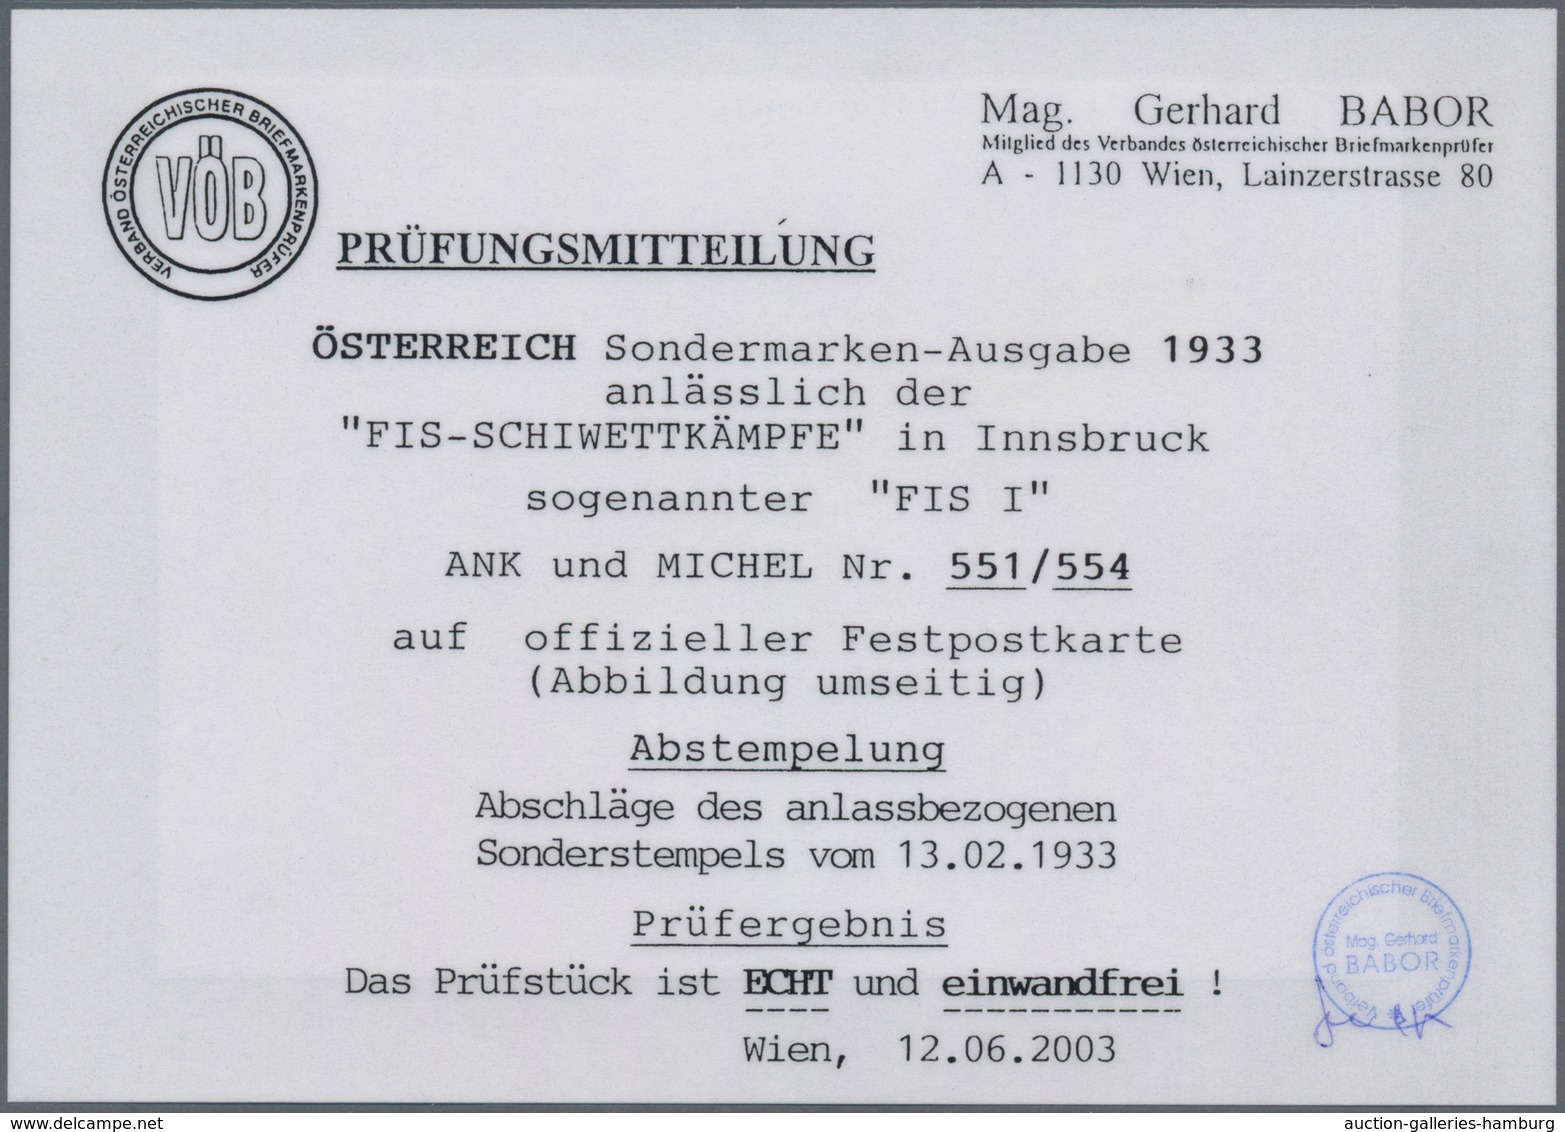 Österreich: 1933, FIS-Wettkämpfe, WIPA und Katholikentag, drei Ausgaben je auf Beleg mit SST, für 55